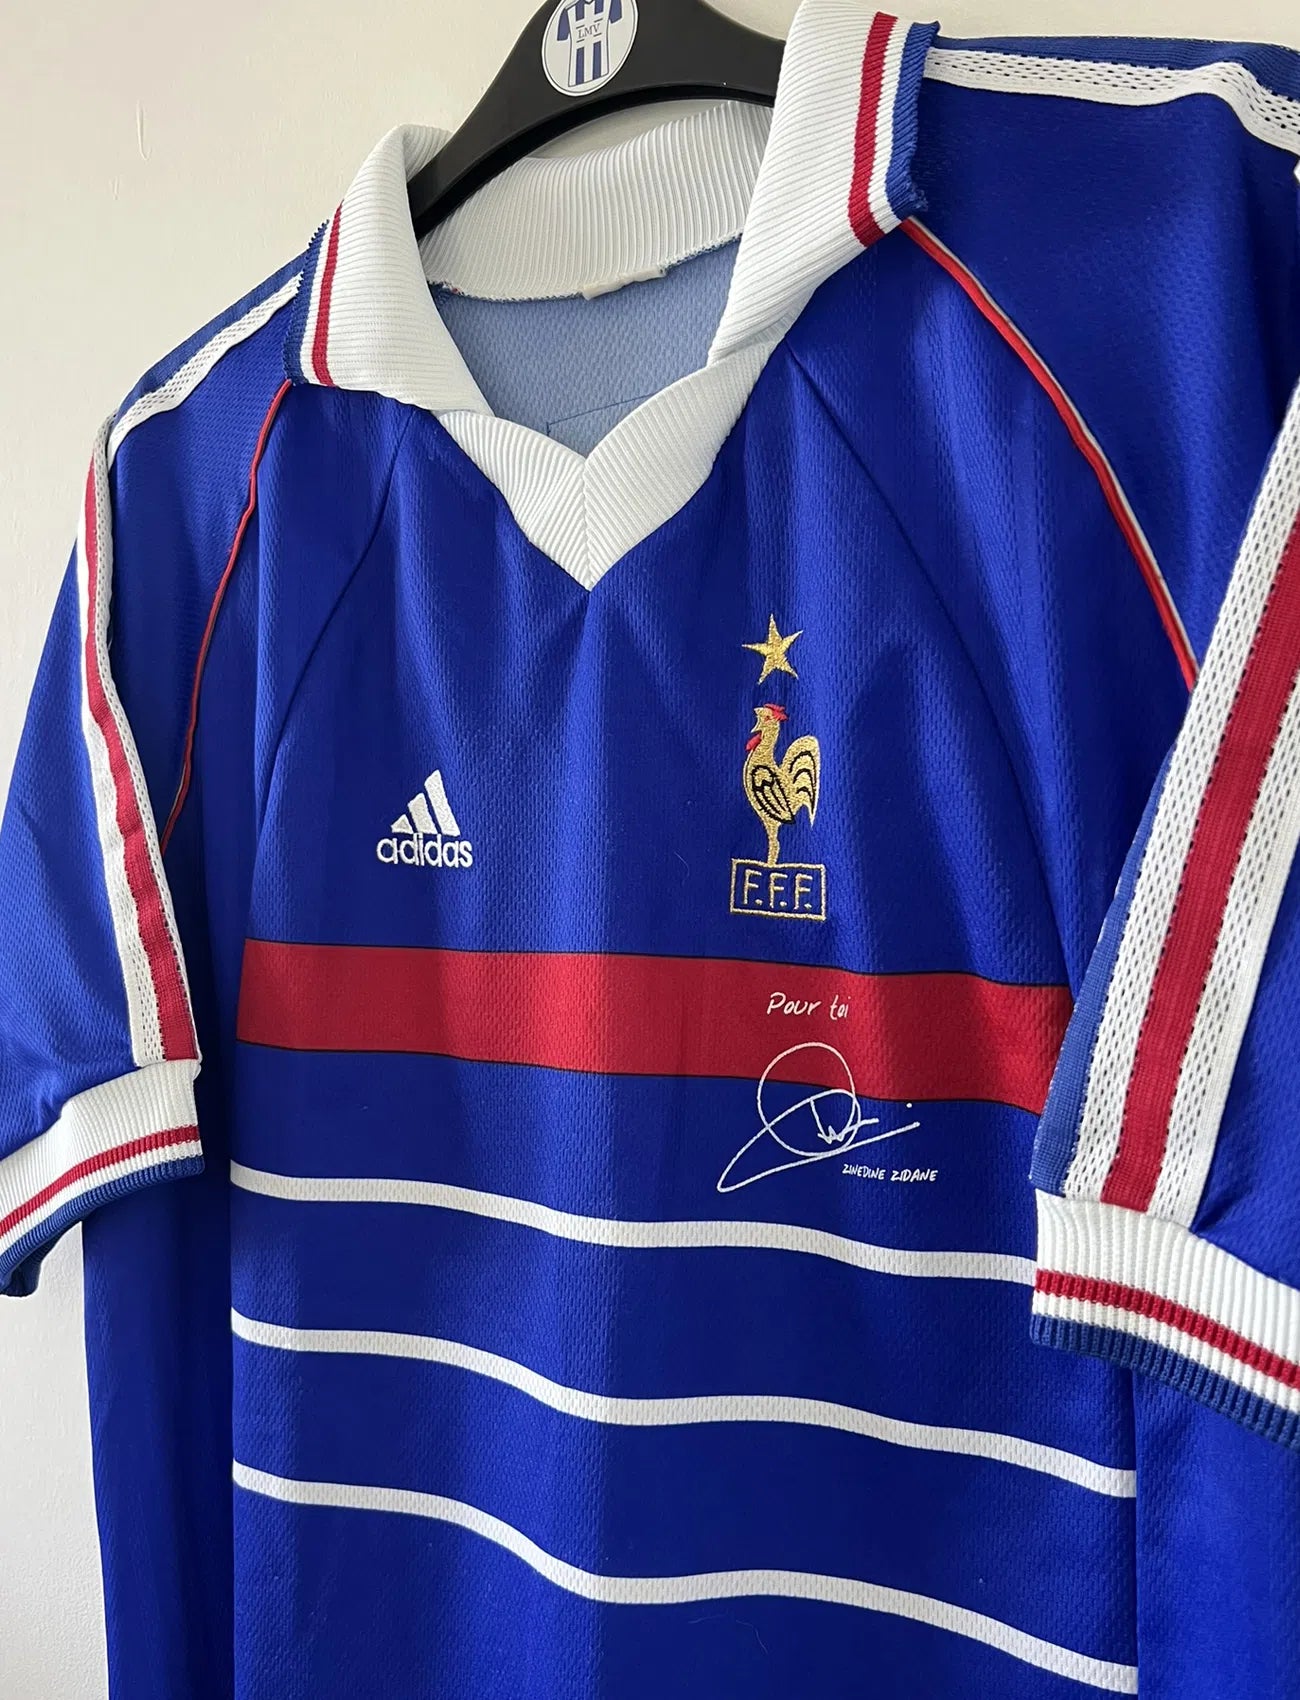 Maillot de foot vintage bleu blanc et rouge domicile de l'équipe de France 1998. On peut retrouver le sponsor adidas. On peut voir le coq avec l'étoile avec la signature "pour toi" de Zinedine Zidane. Il s'agit d'un maillot authentique.